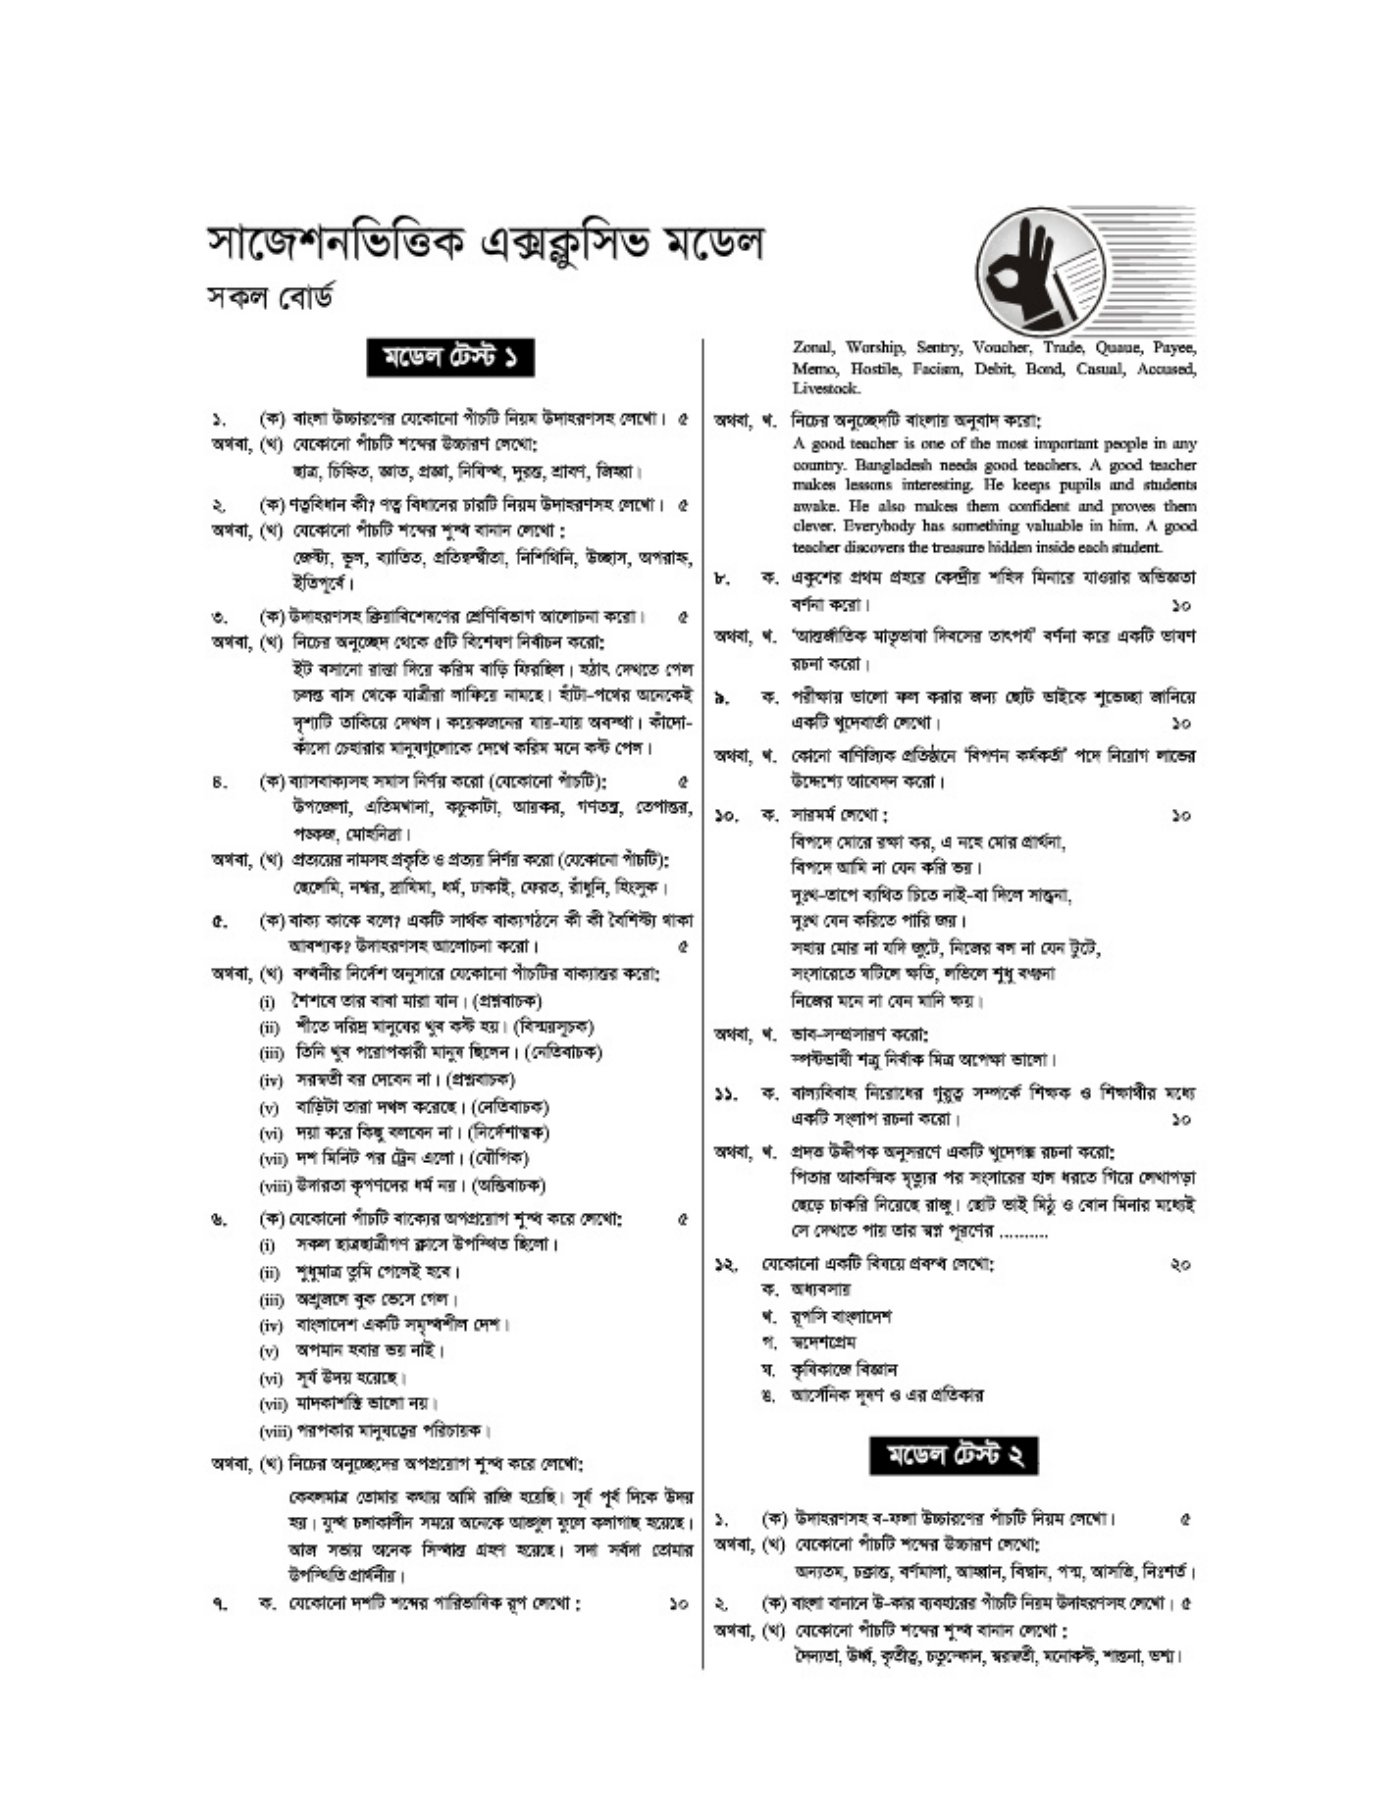 এইচএসসি বাংলা ২য় পত্র মডেল টেস্ট ২০২২ | Bangla 2nd Paper Model Test 2022